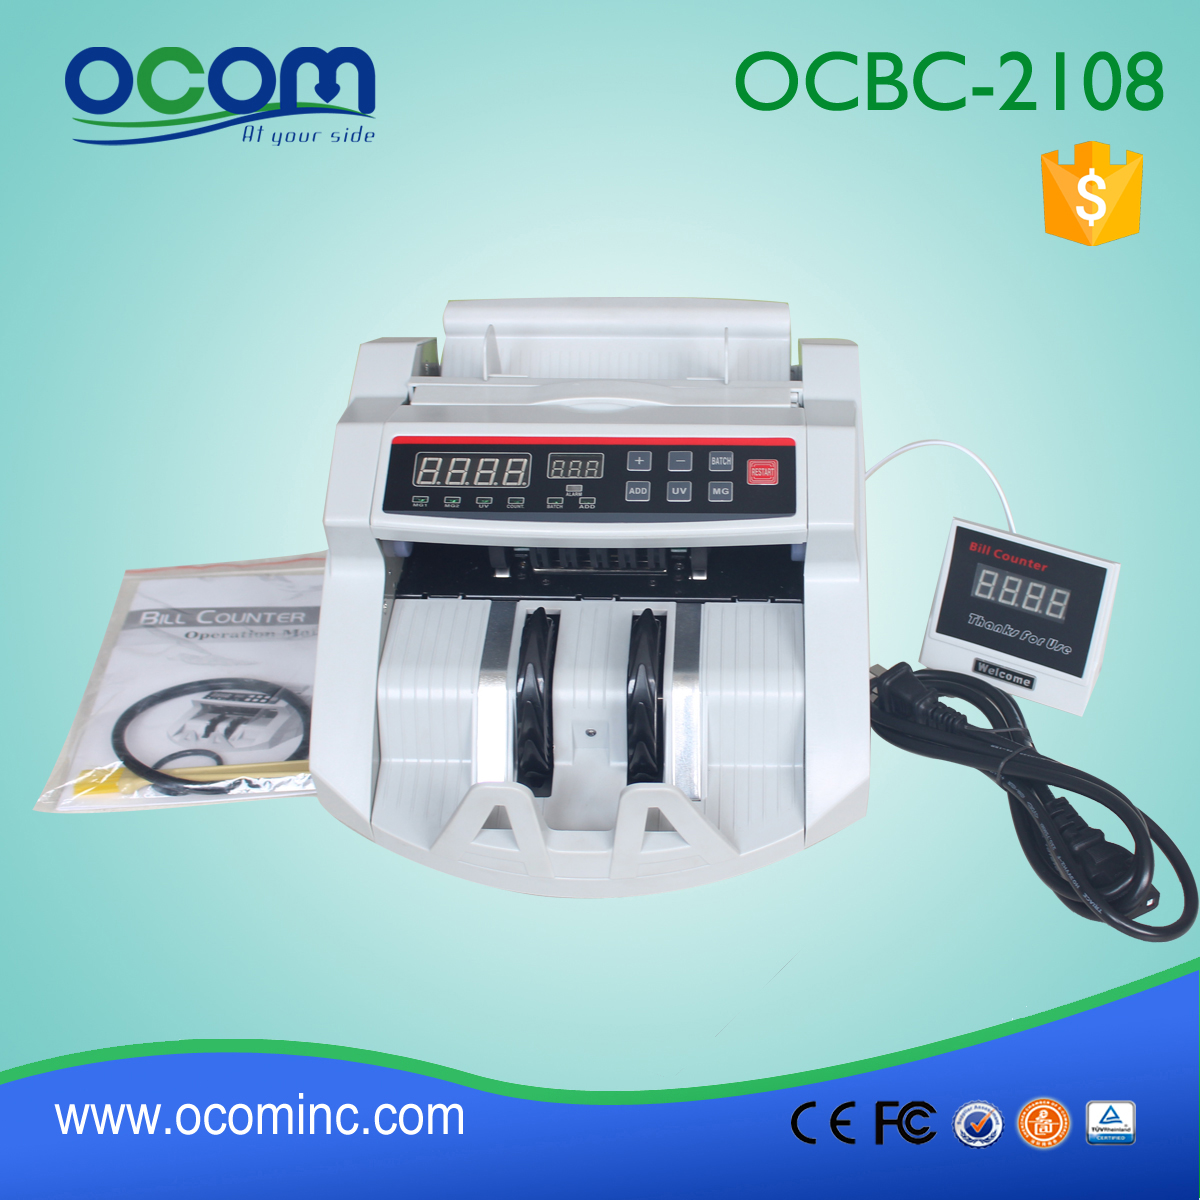 OCBC-2108 contador de dinero barato hecho en China